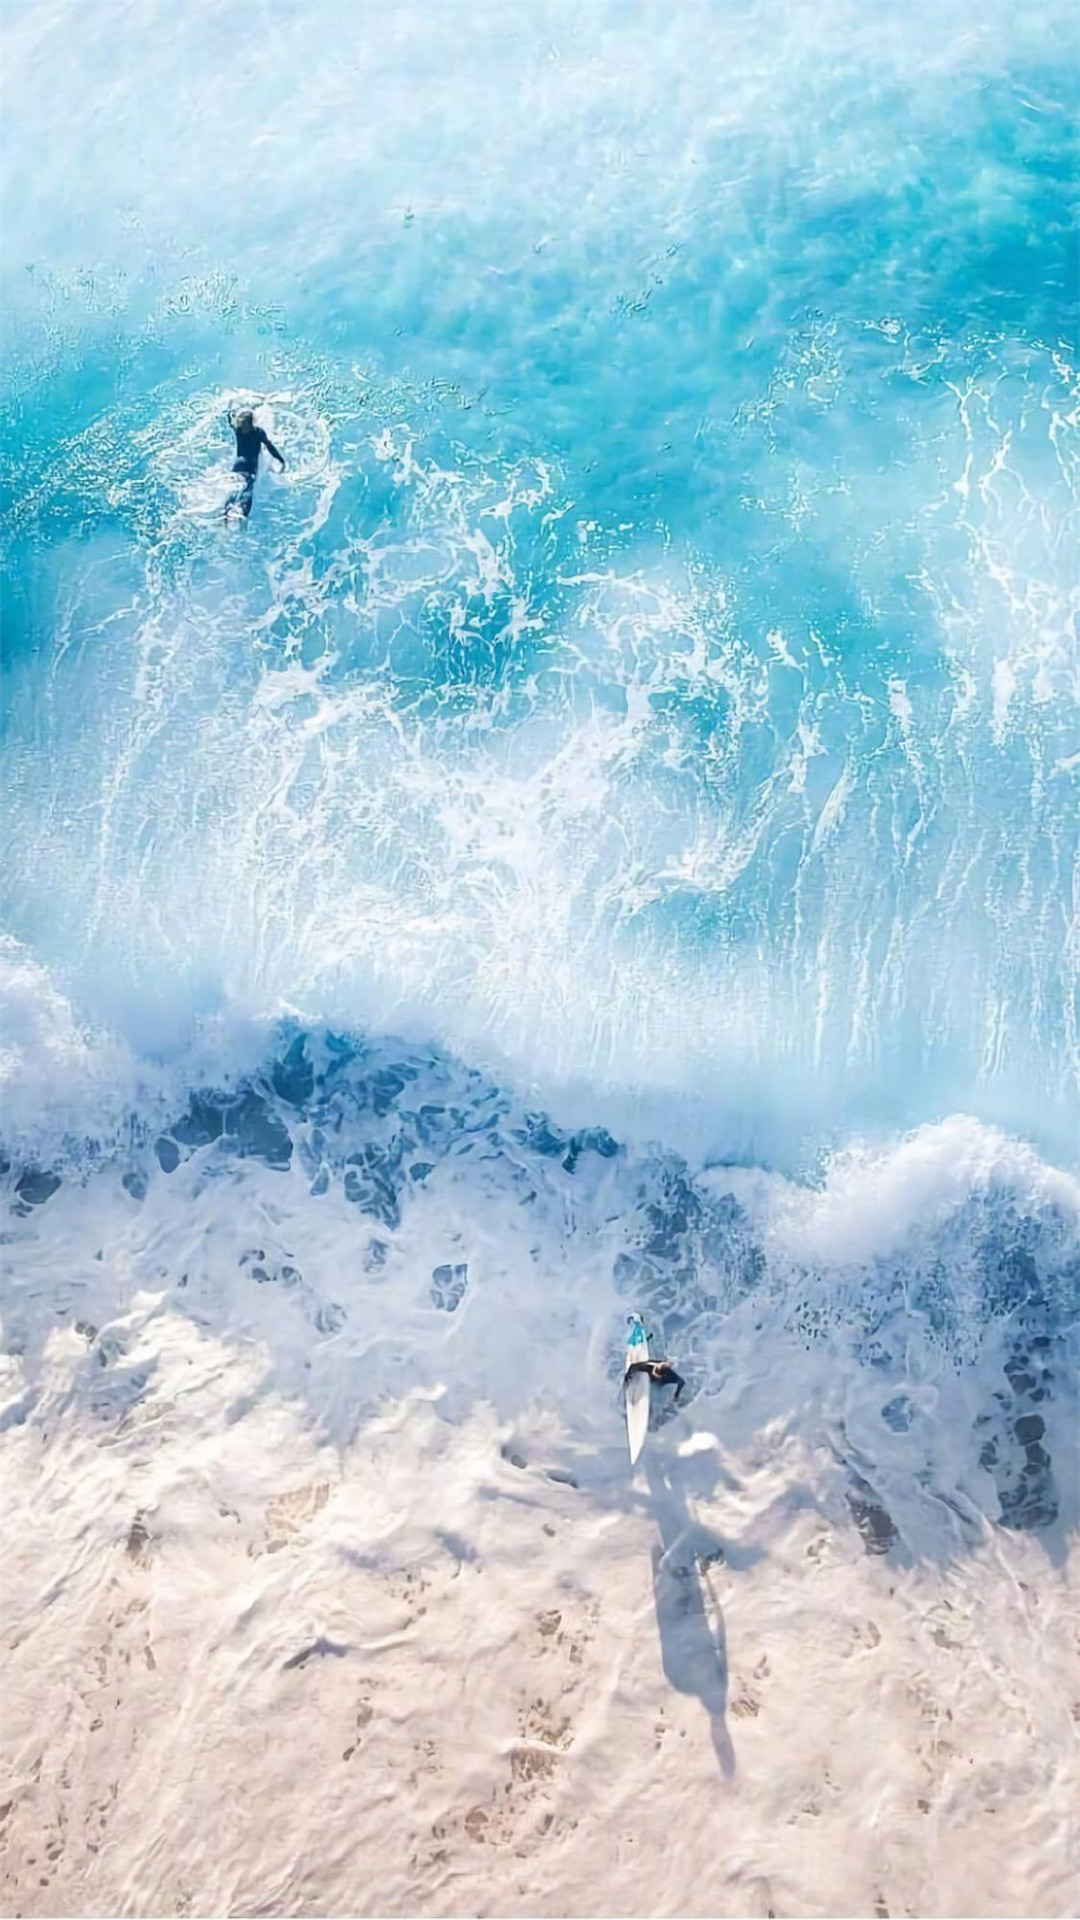 apk小游戏蓝色系海洋风景唯美高清手机壁纸安卓手机壁纸高清截图2